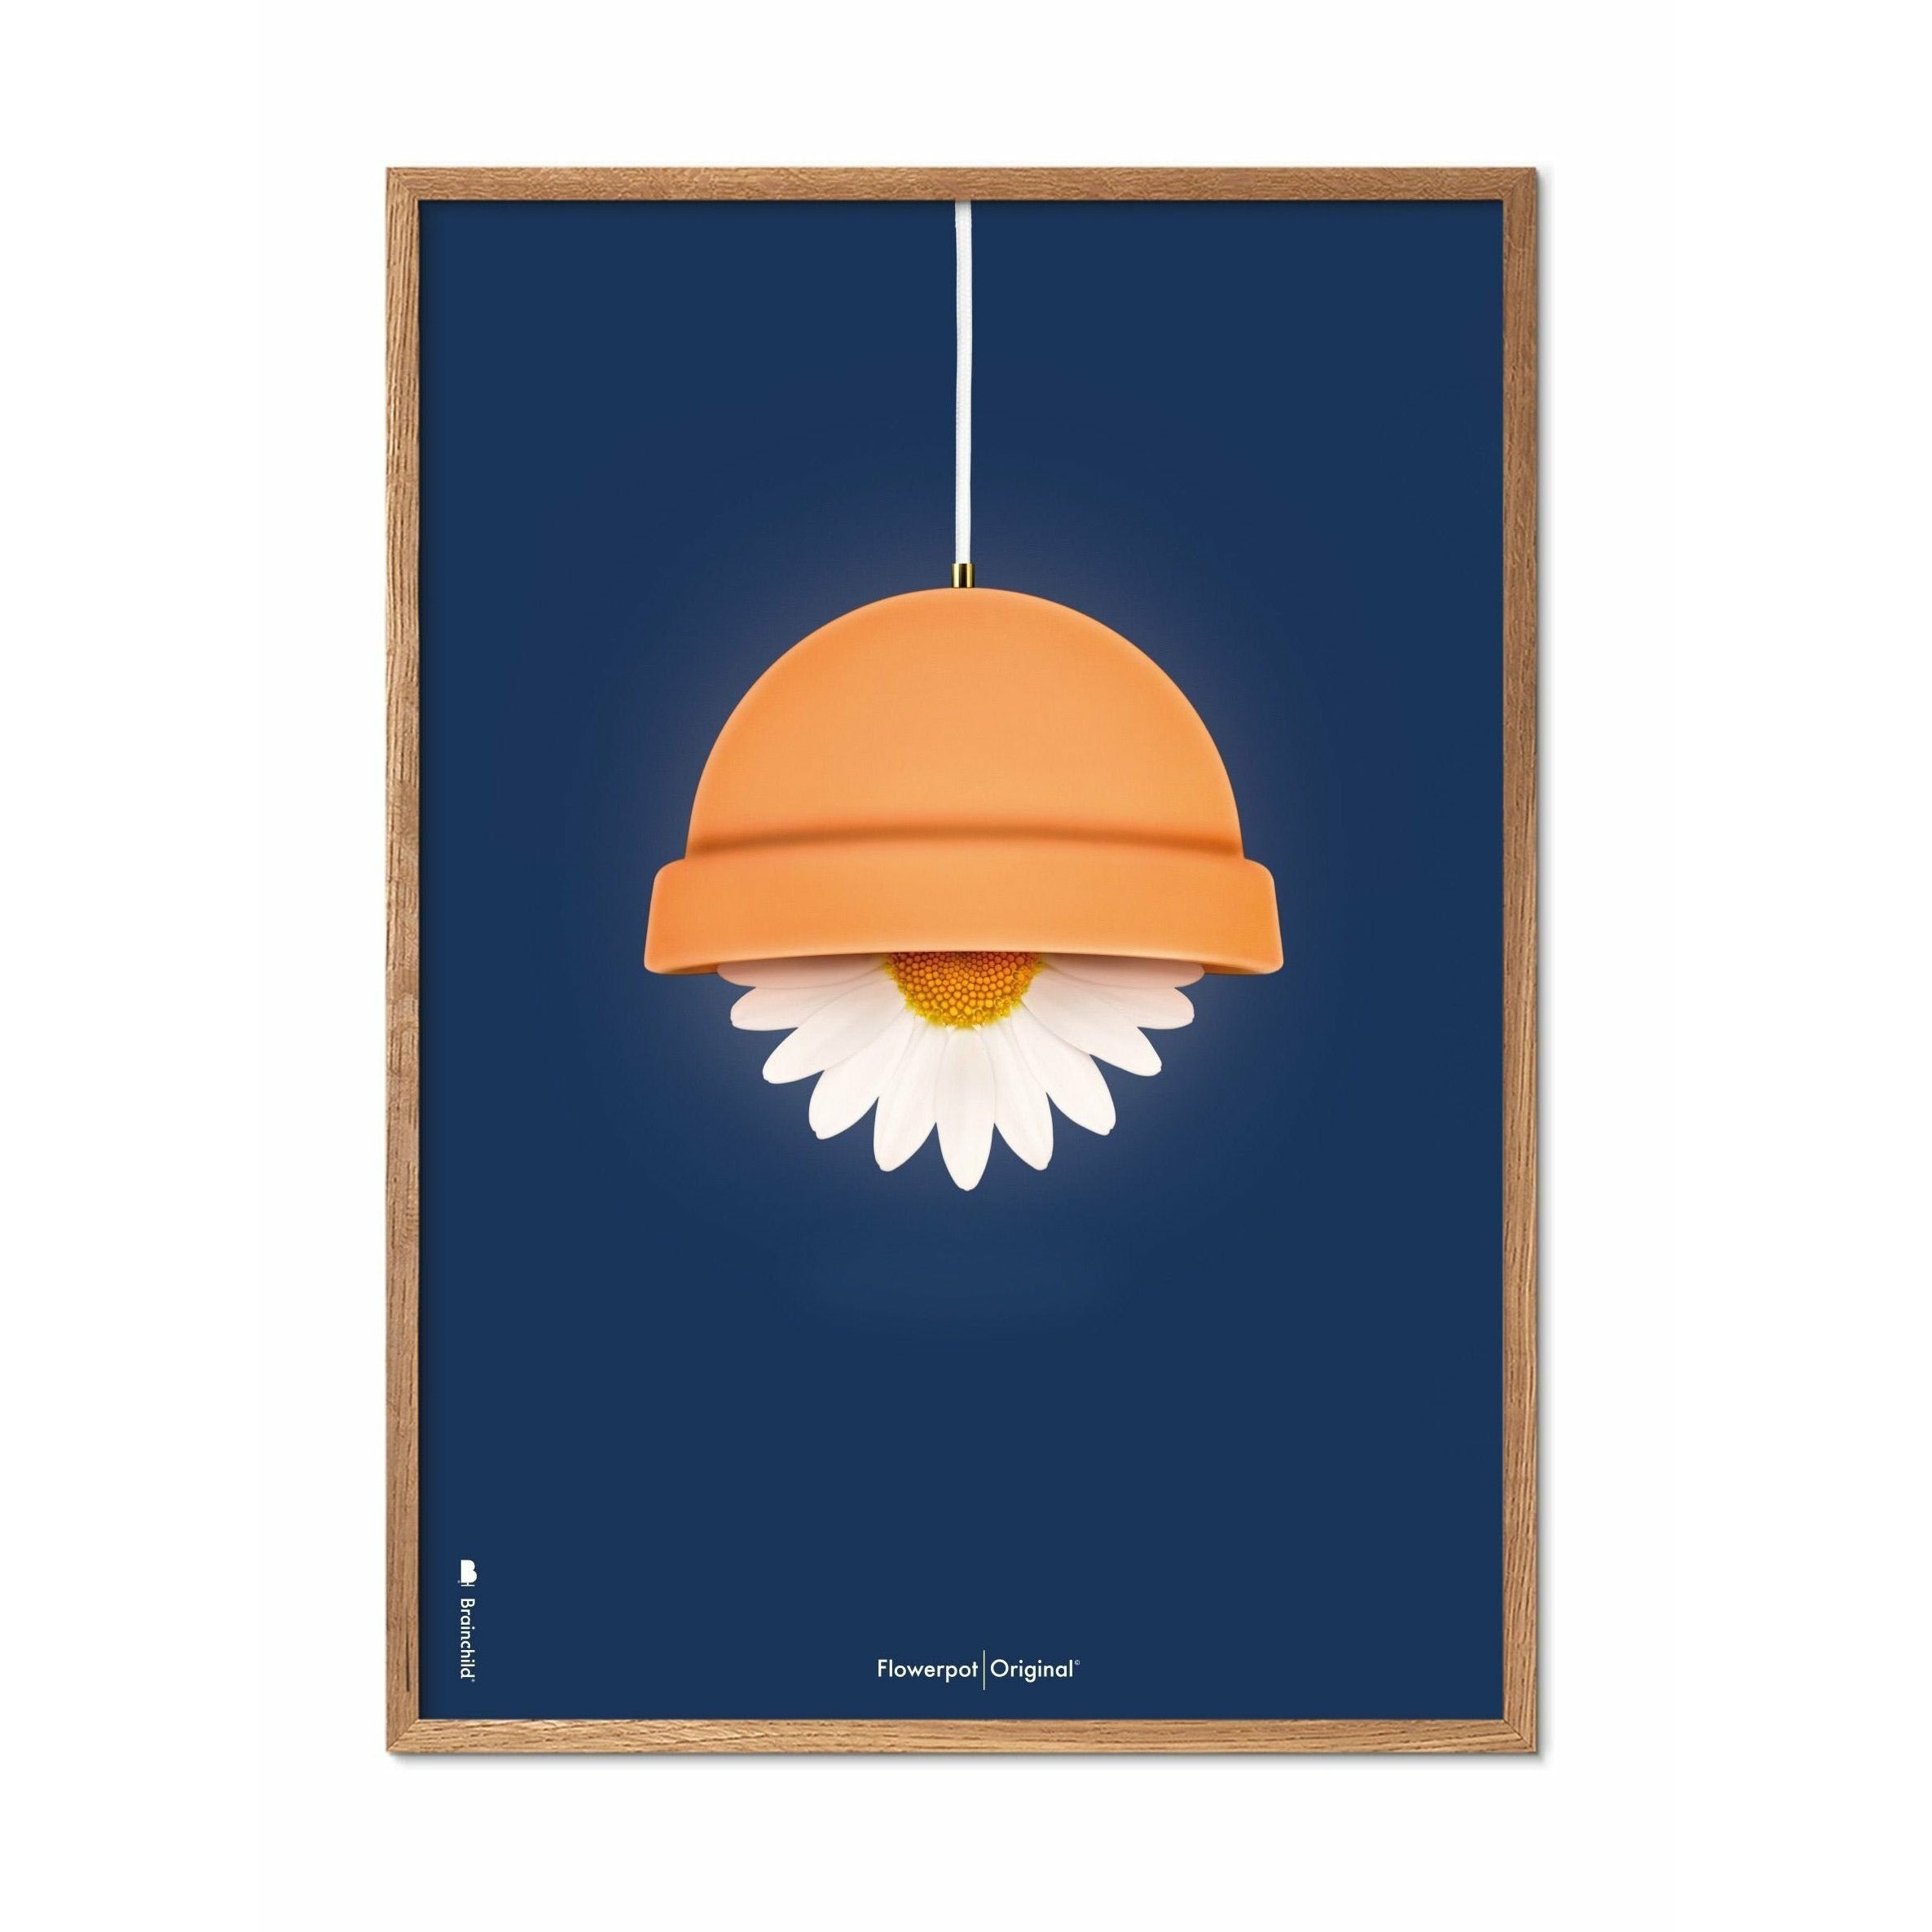 Brainchild Blumentopf Classic Poster, Rahmen aus hellem Holz 30x40 Cm, dunkelblauer Hintergrund